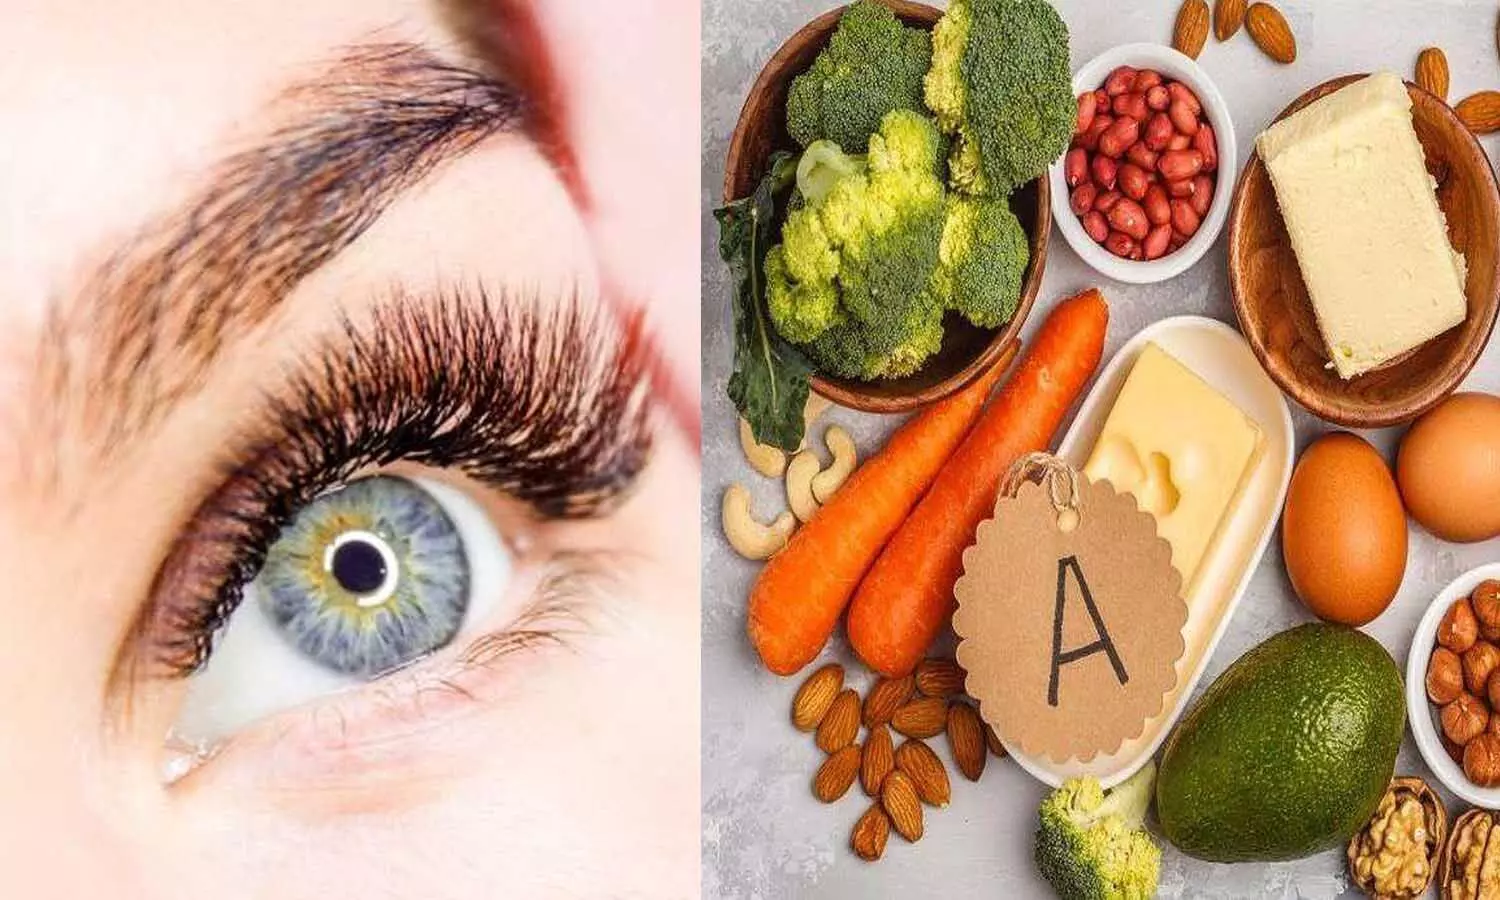 Aankhon Ke Liye Vitamin: आंखों की समस्या को दूर रखते हैं ये विटामिन, खाने में जरूर शामिल करें ये चीजें